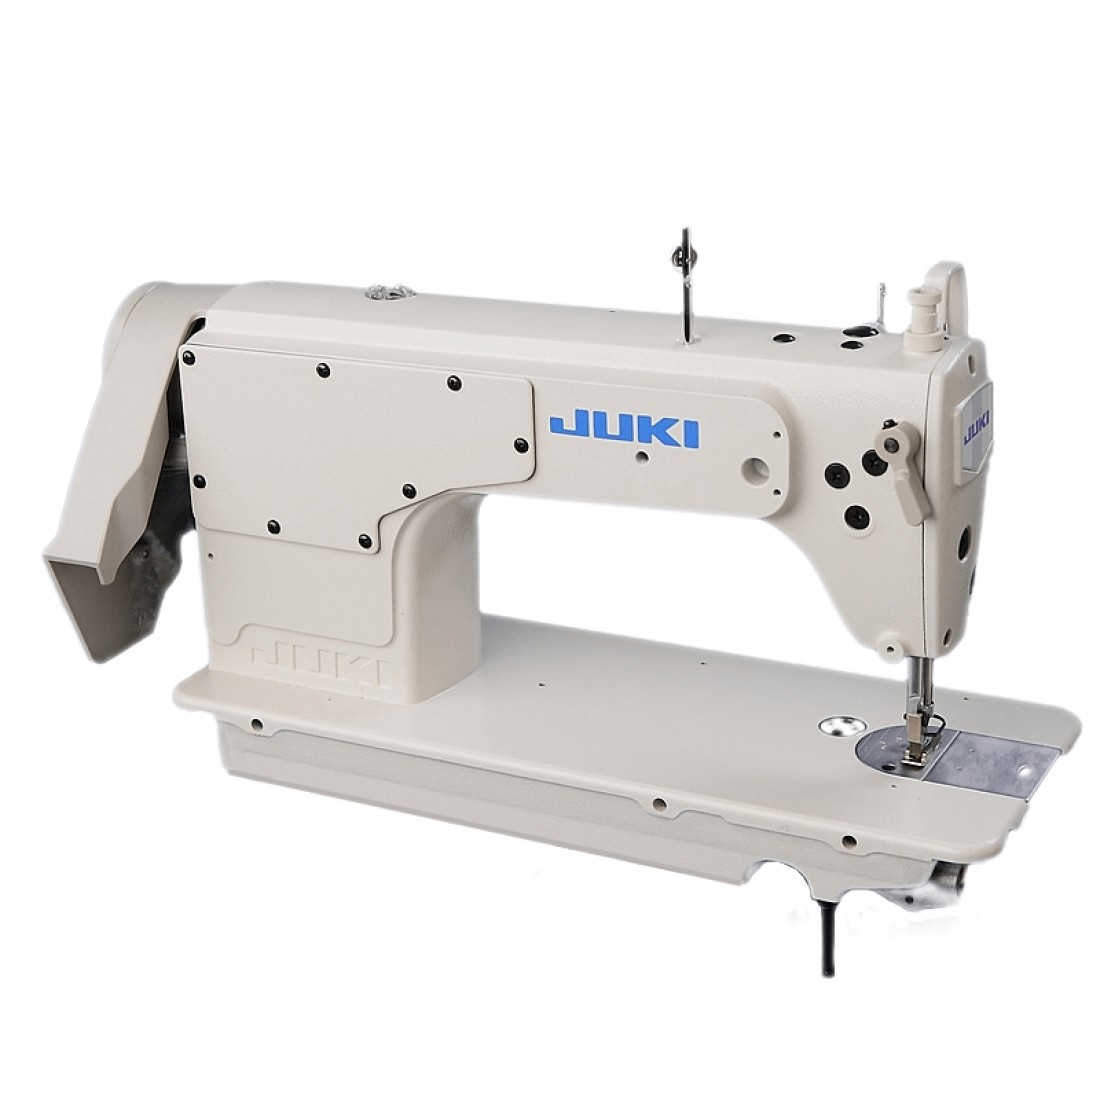 Промышленная швейная машинка juki. Швейная машина Juki DDL-8700. Швейная машинка Juki DDL 8700. Промышленная швейная машина Juki DDL-8700. Промышленная машинка Джуки DDL 8700.